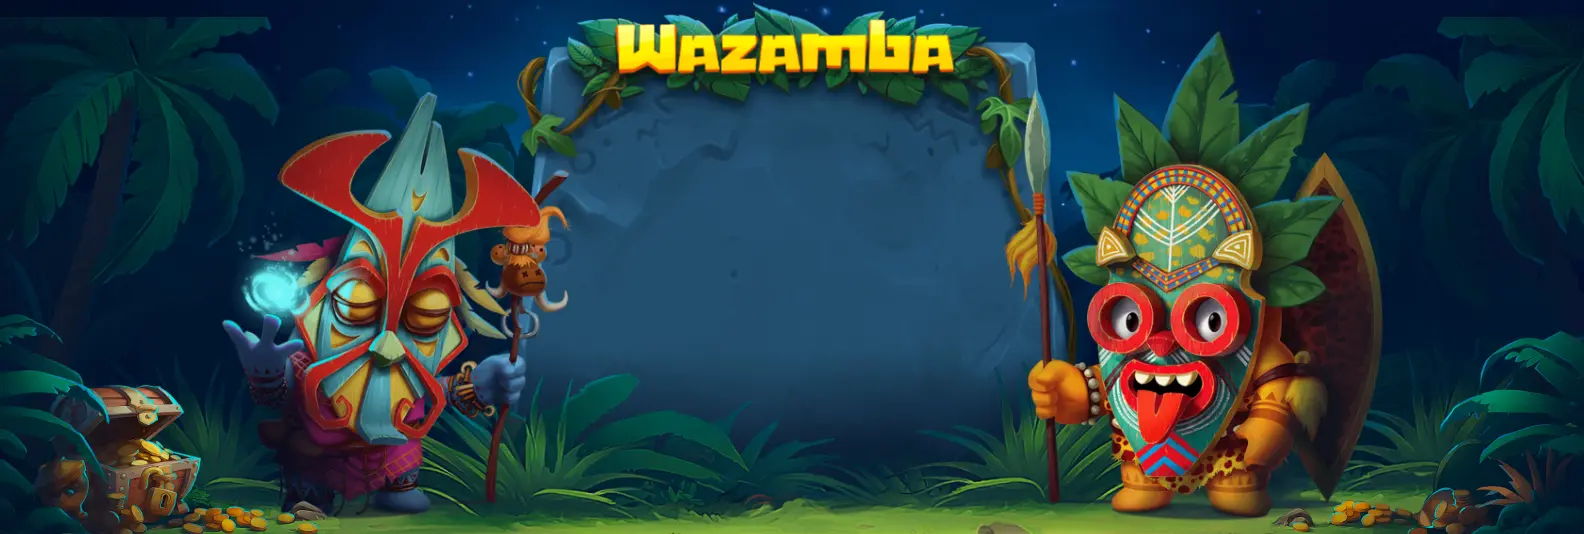 Wazamba casino background